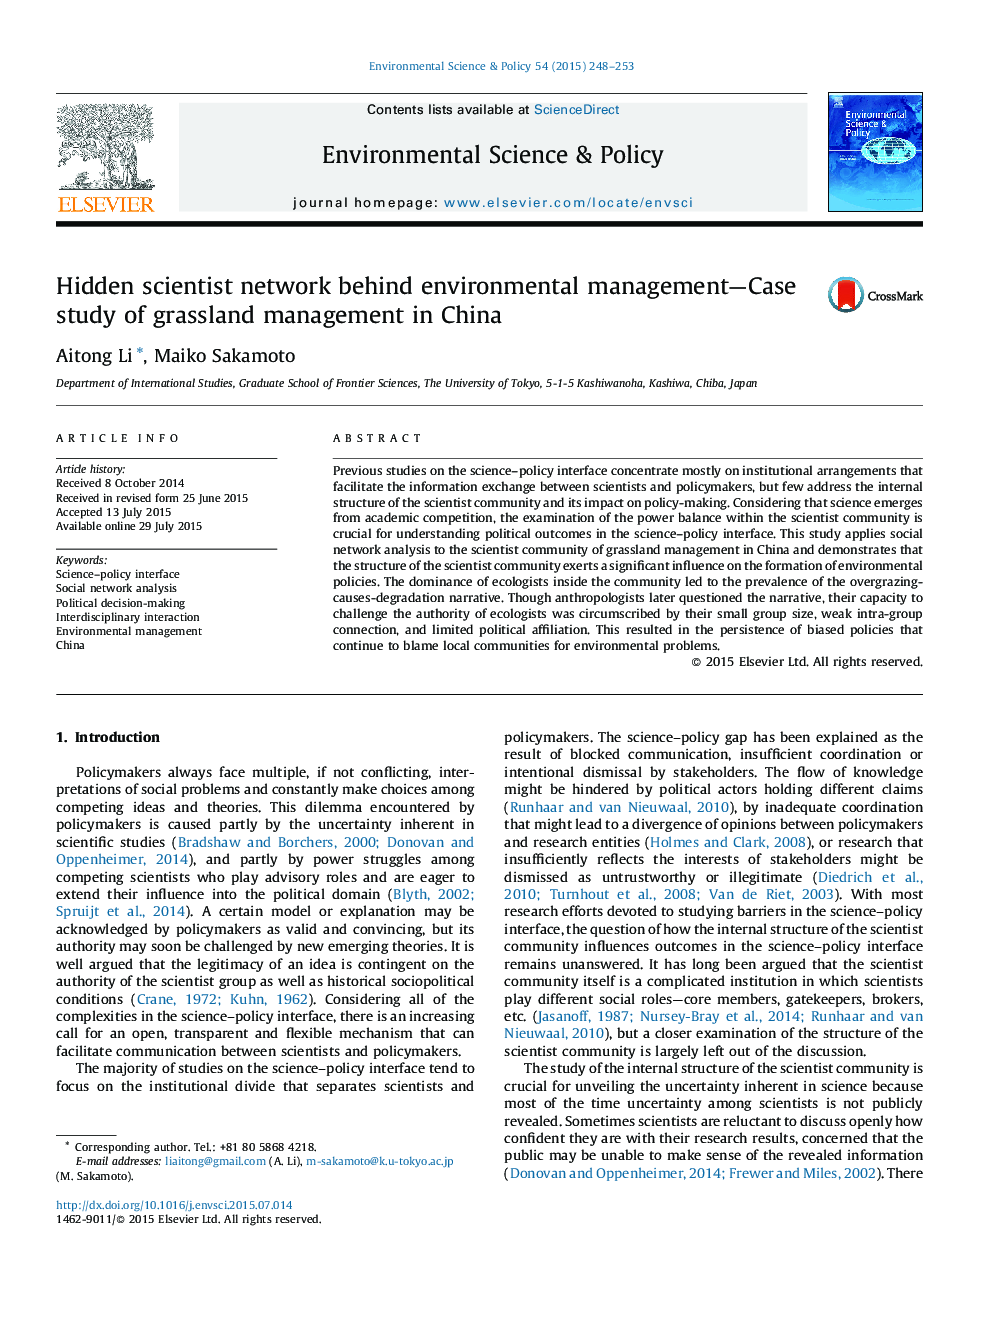 شبکه دانشمندان مخفی در مدیریت زیست محیطی - مطالعه موردی مدیریت چمنزار در چین 